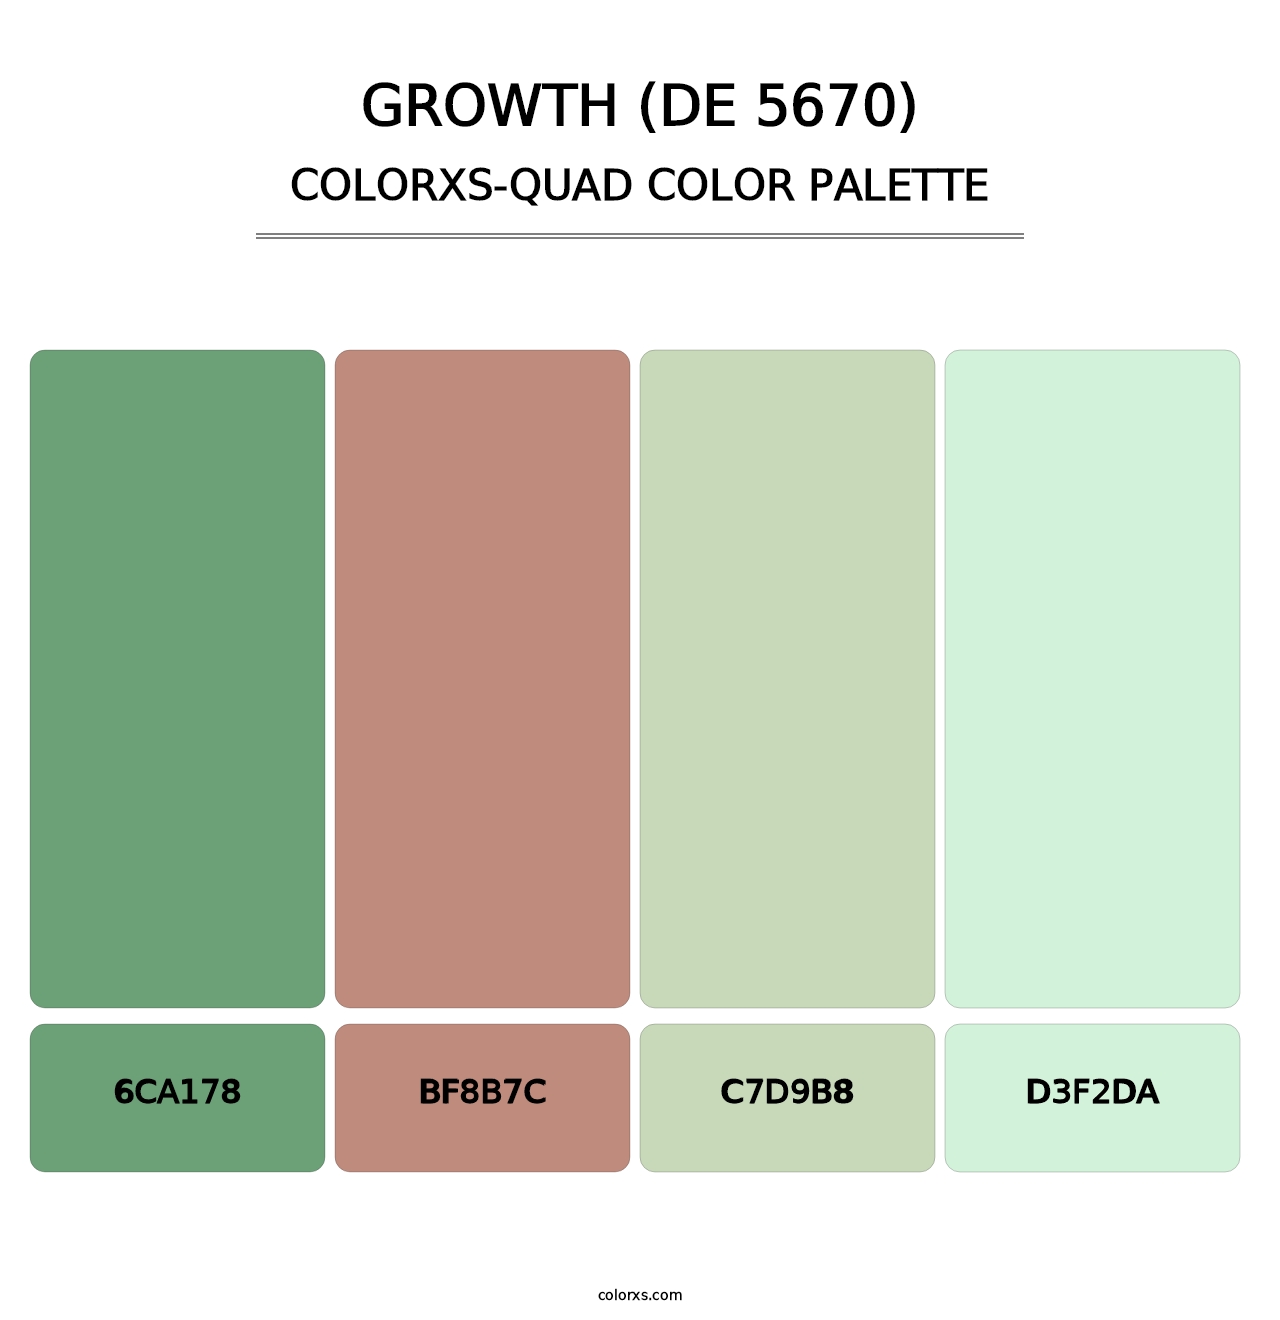 Growth (DE 5670) - Colorxs Quad Palette